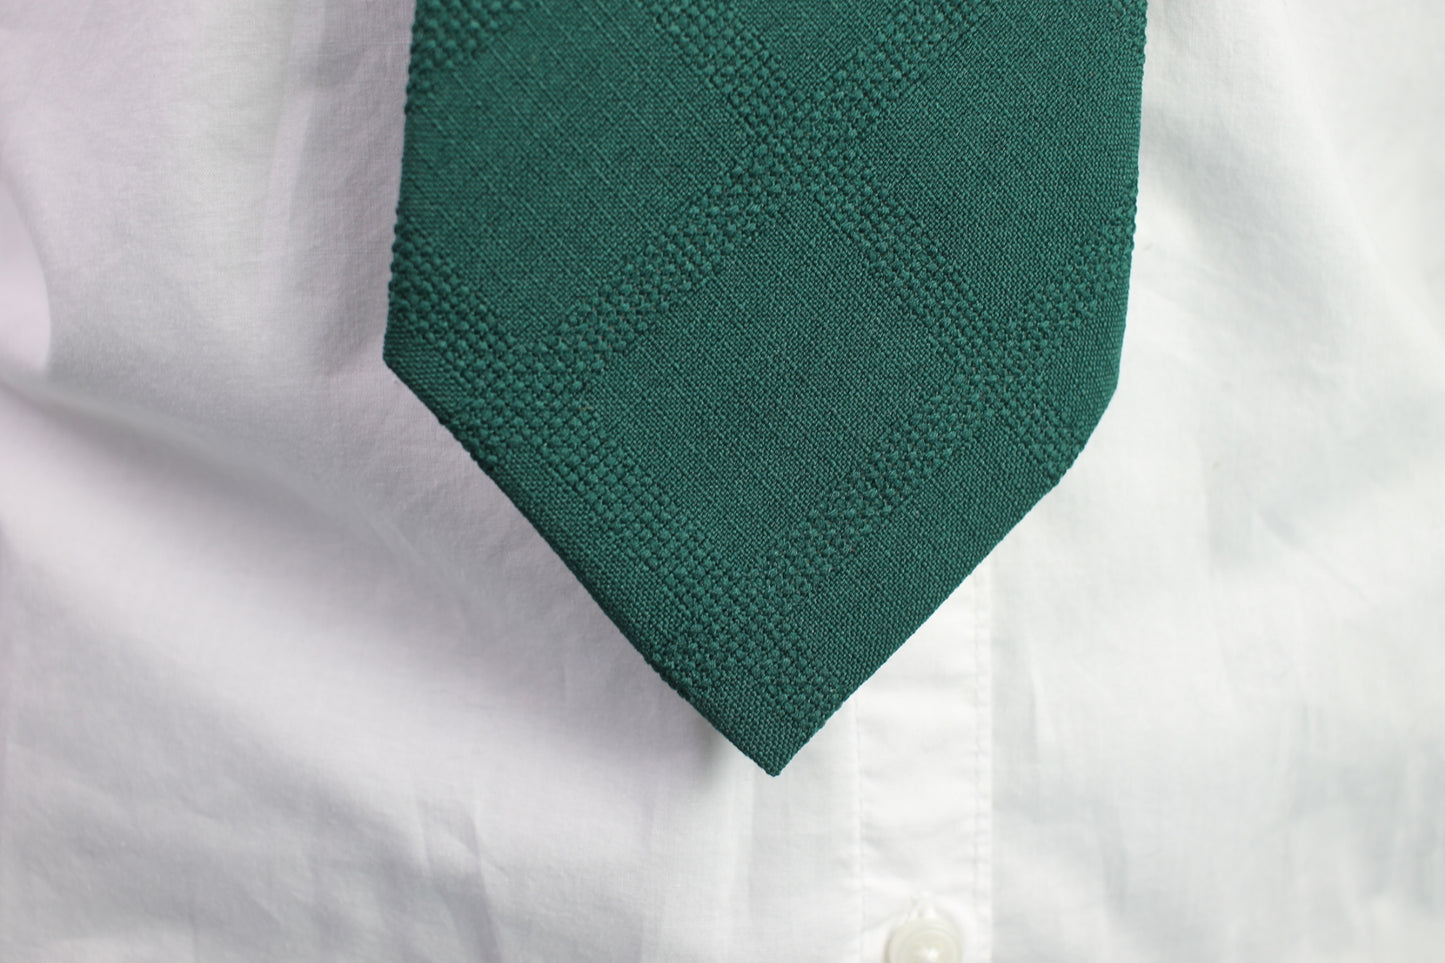 Vintage Fruit of the Loom dark green textured pattern tie